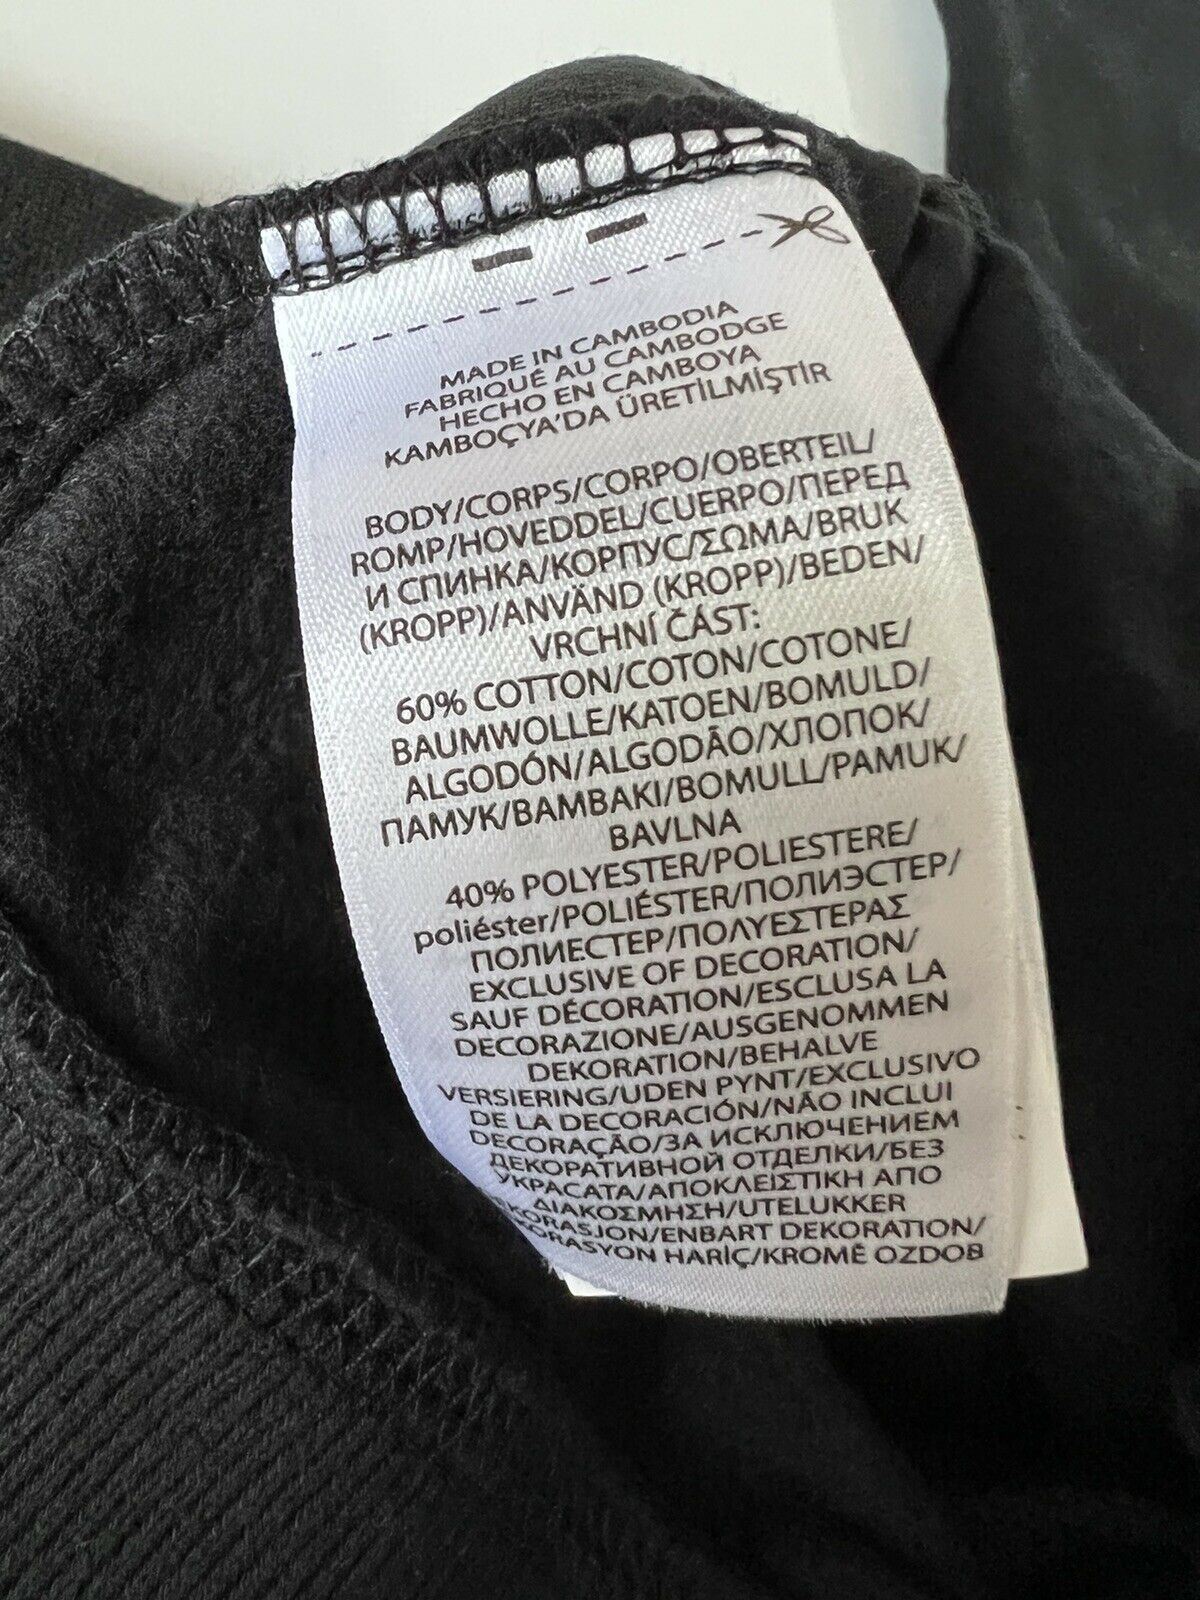 Neu mit Etikett: Schwarze Hose für Mädchen von Polo Ralph Lauren, M (8–10)